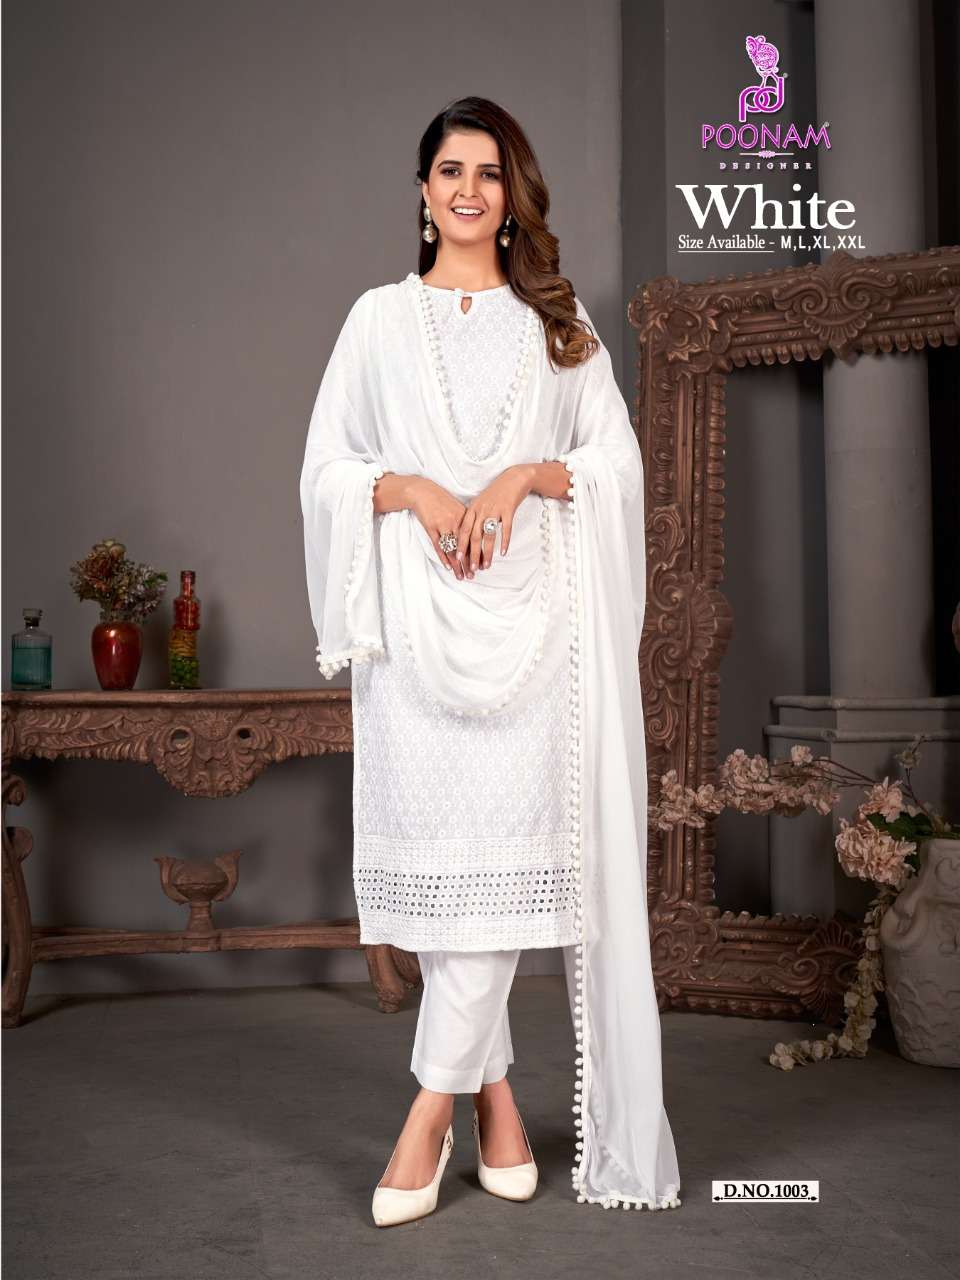 poonam designer white 1001-1006 series exclusive designer kurti pant with dupatta catalogue 